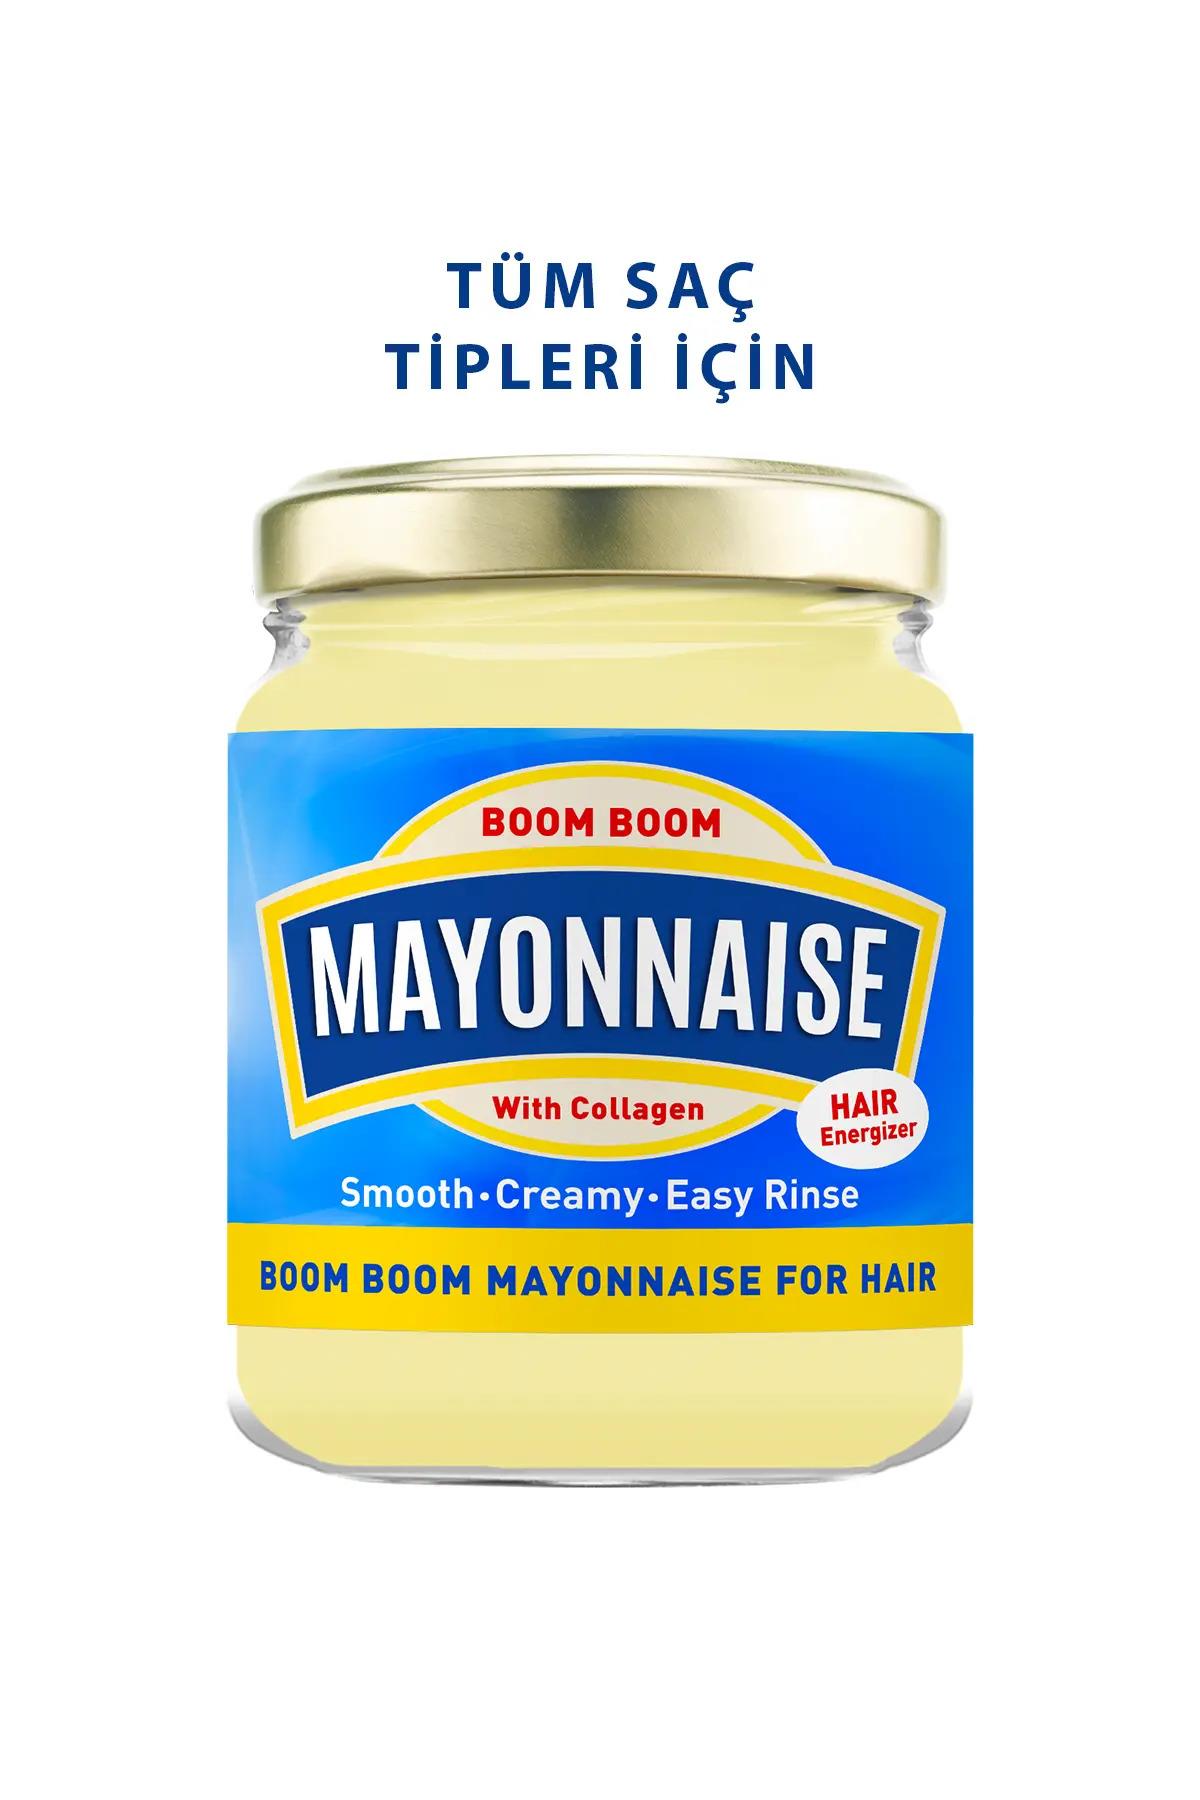 mayo saç mayonezi kullananlar, mayo saç mayonezi nasıl kullanılır, saç bakımında mayonez kullanımı, saç maskesi gratis, saç mayonezi, saç mayonezi kullananlar, saç mayonezi kullanımı, saç mayonezi mayo, saç mayonezi mayo nasıl kullanılır, saç mayonezi nasıl kullanılır, saç mayonezi ne işe yarar, saç mayonezi nedir, saç mayonezi procsin, saç mayonezi trendyol, saç mayonezi yorumları